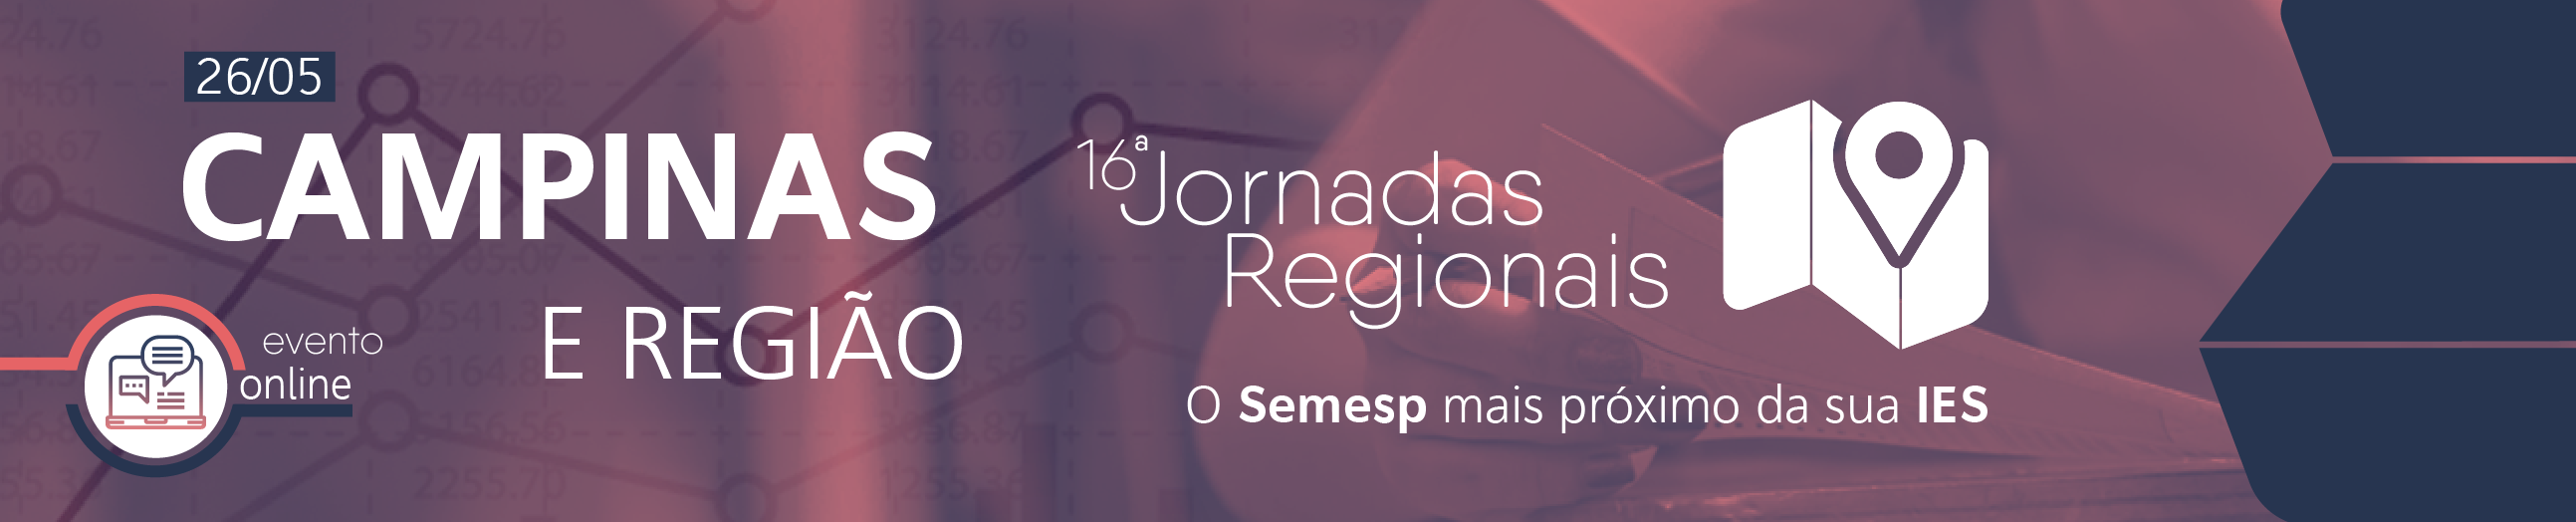 Jornadas Regionais | 16ª Edição - Campinas